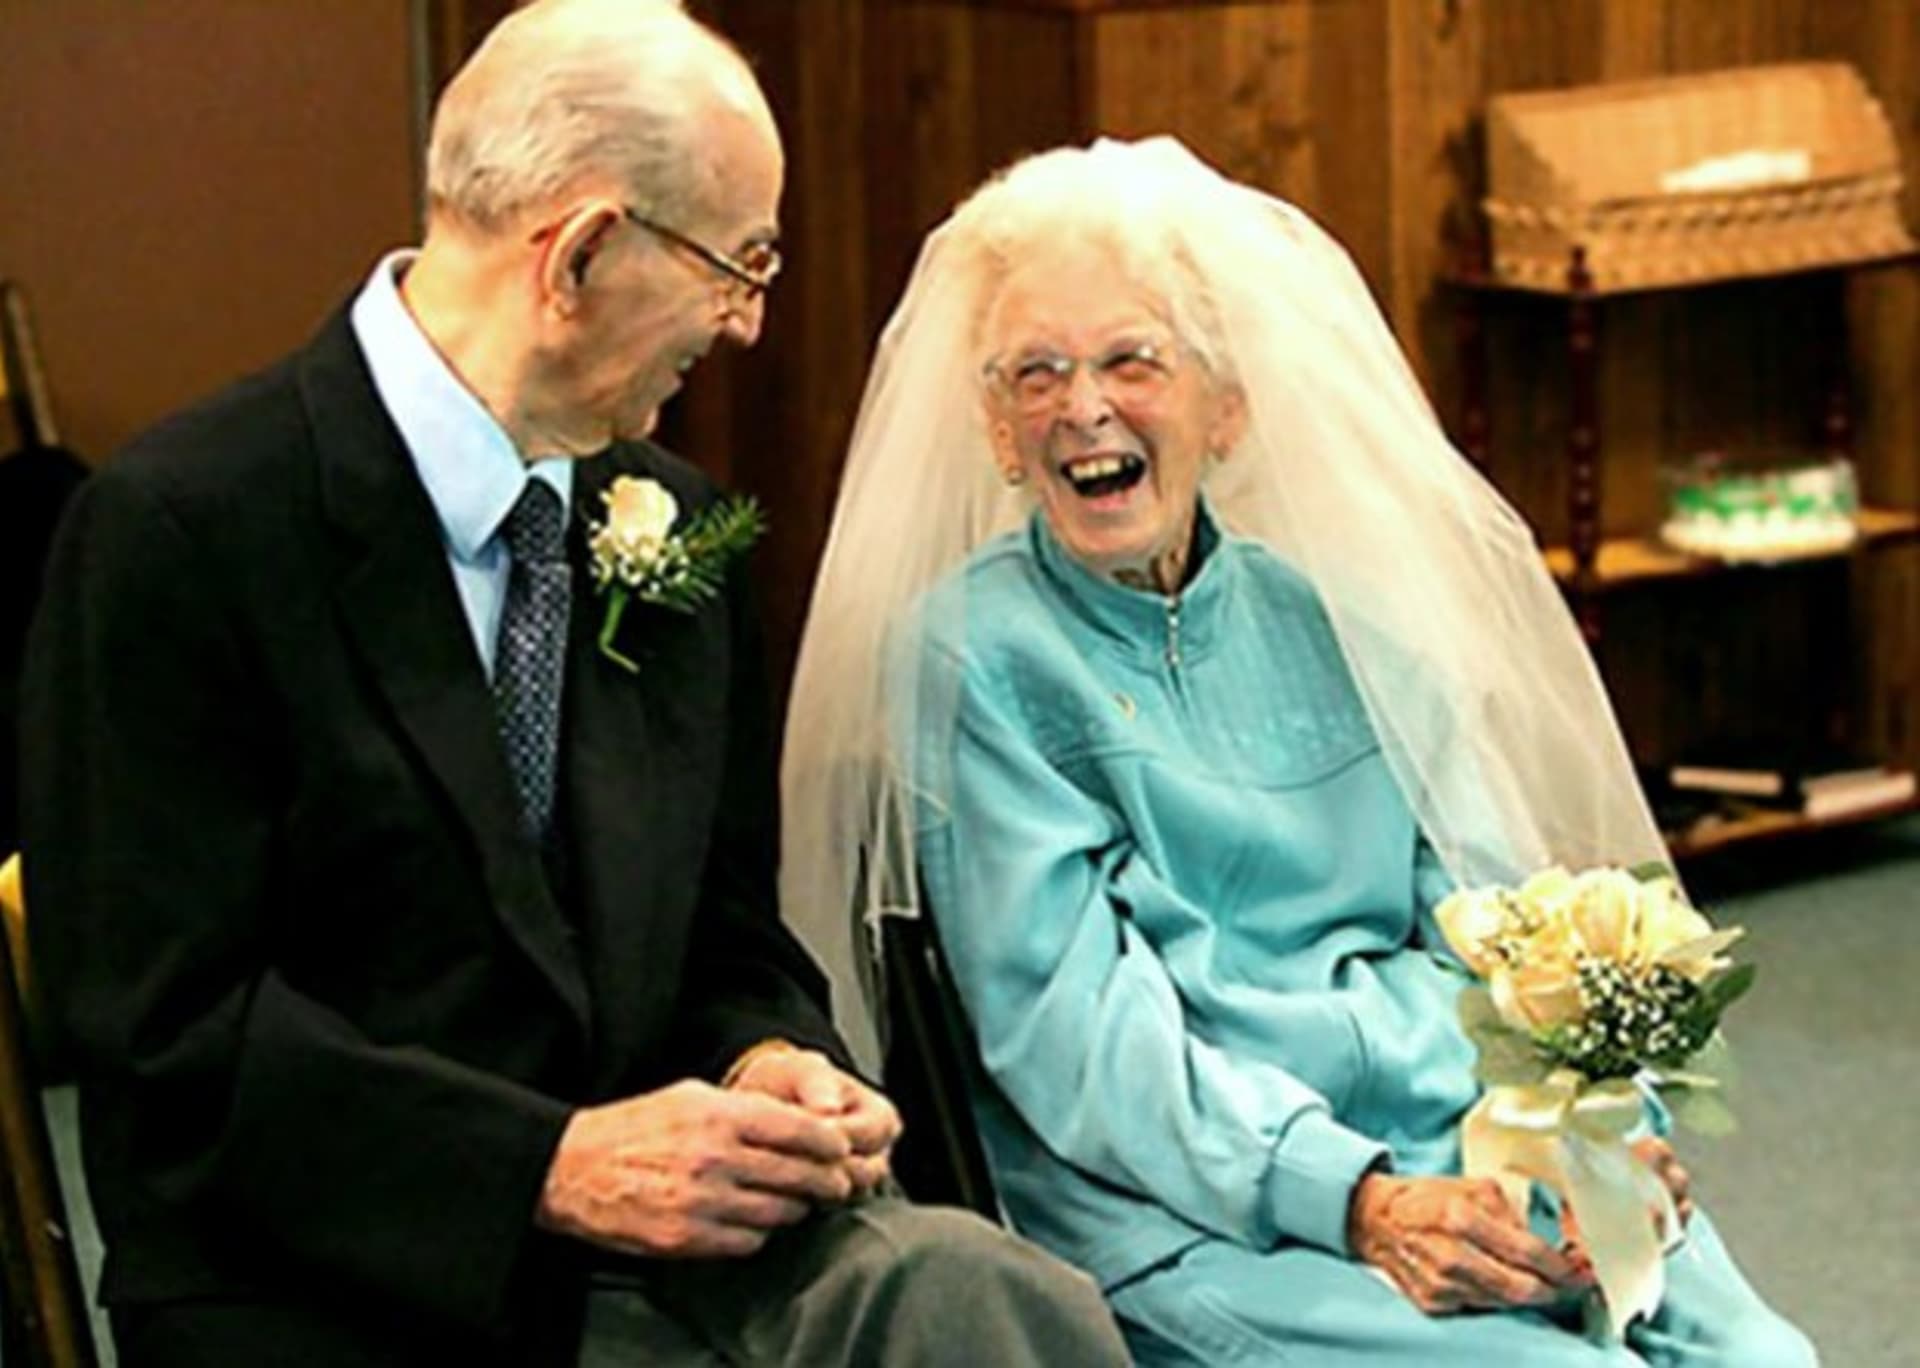 Alton Nichols, 91, a Betty Hall, 84, našli svou lásku v domě pro seniory